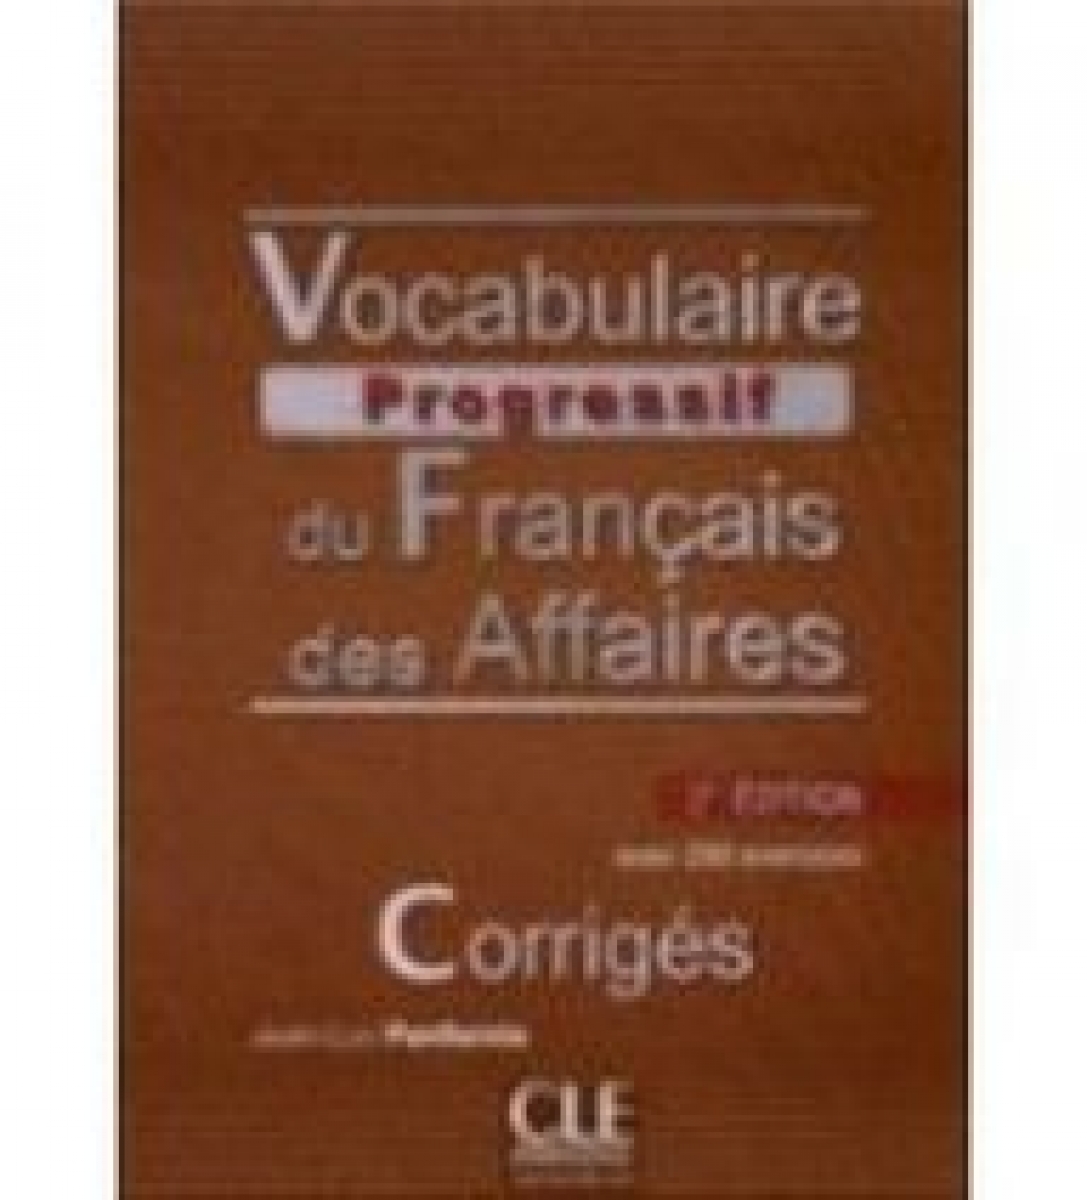 Jean-Luc Penfornis Vocabulaire Progressif du francais des affaires 2e dition - Corrigs 